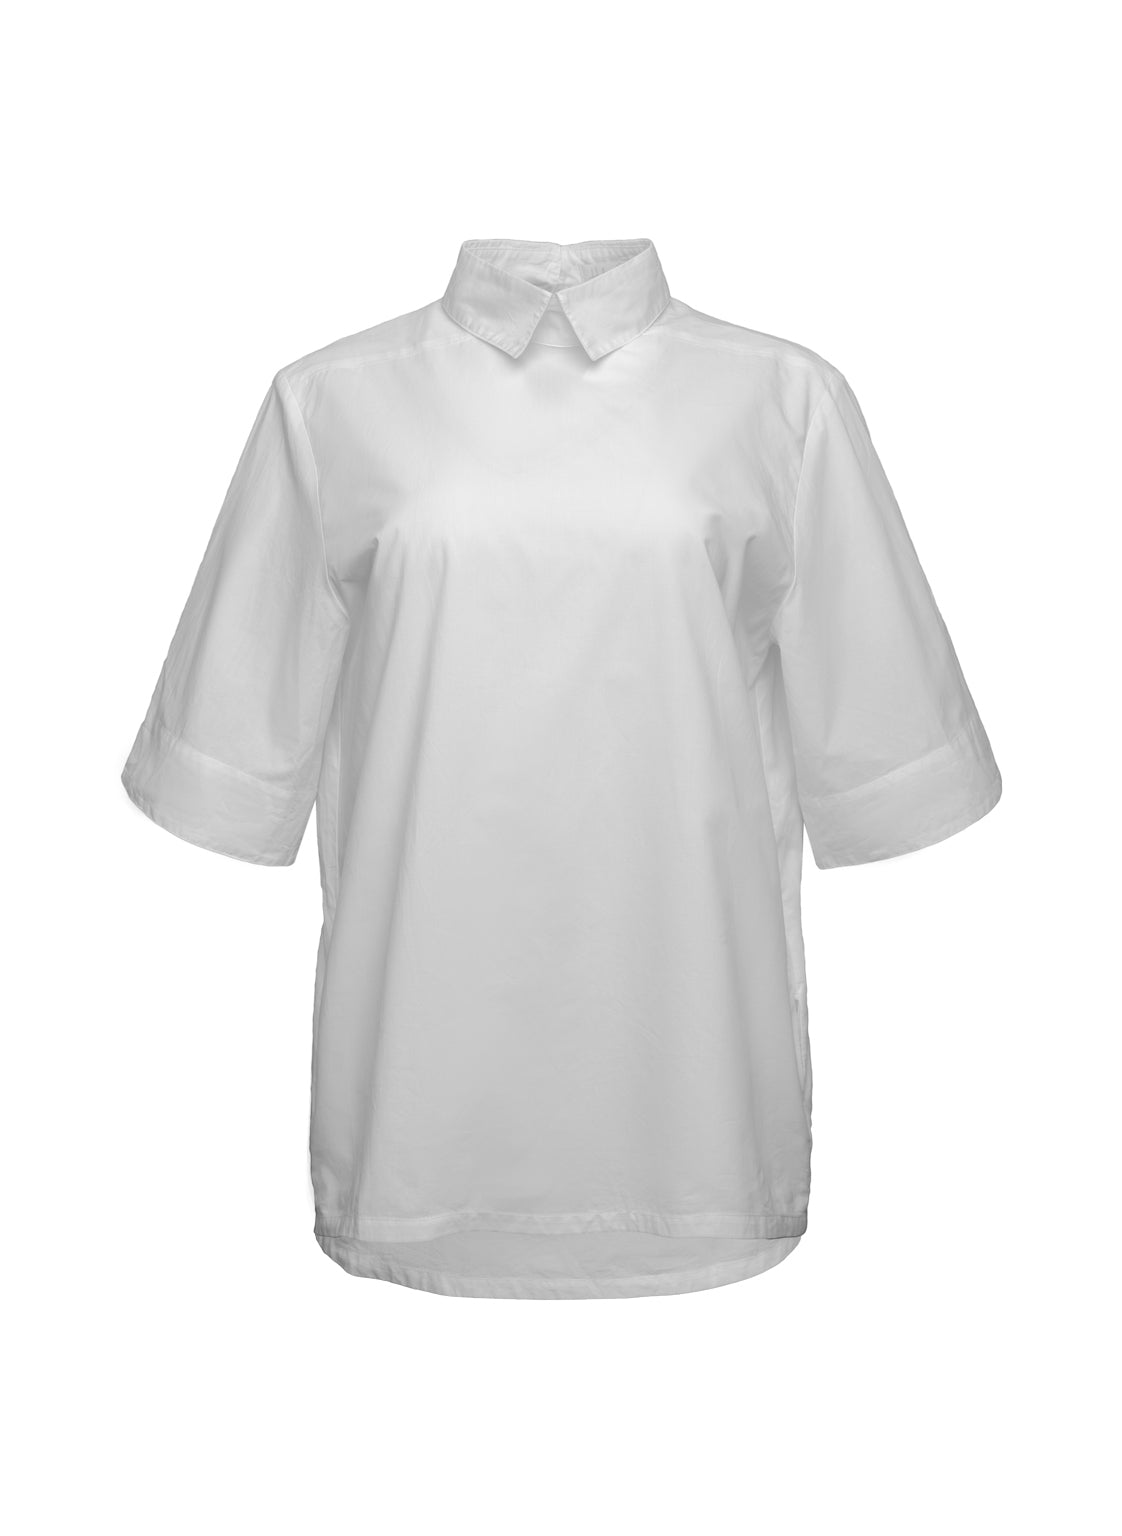 Bluse aus 100% feiner Baumwolle, schmalem Kragen mit Knopfverschluss auf der Rückseite und breiten Ärmelumschlägen